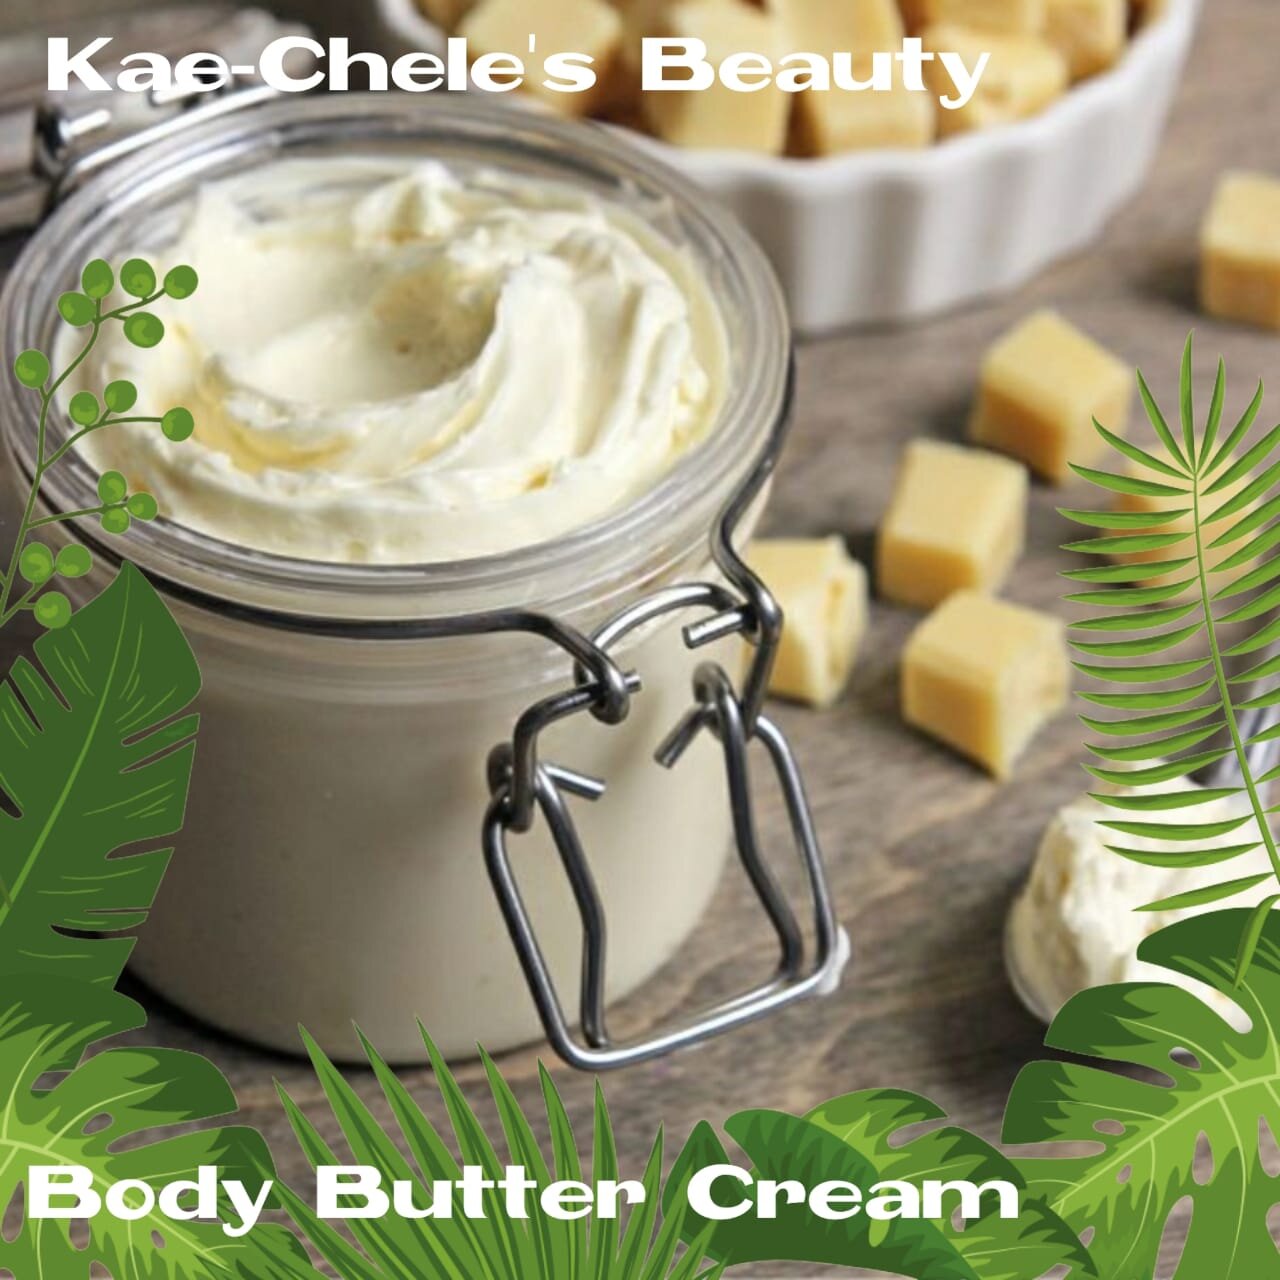 Kae-Chele's Body Butter